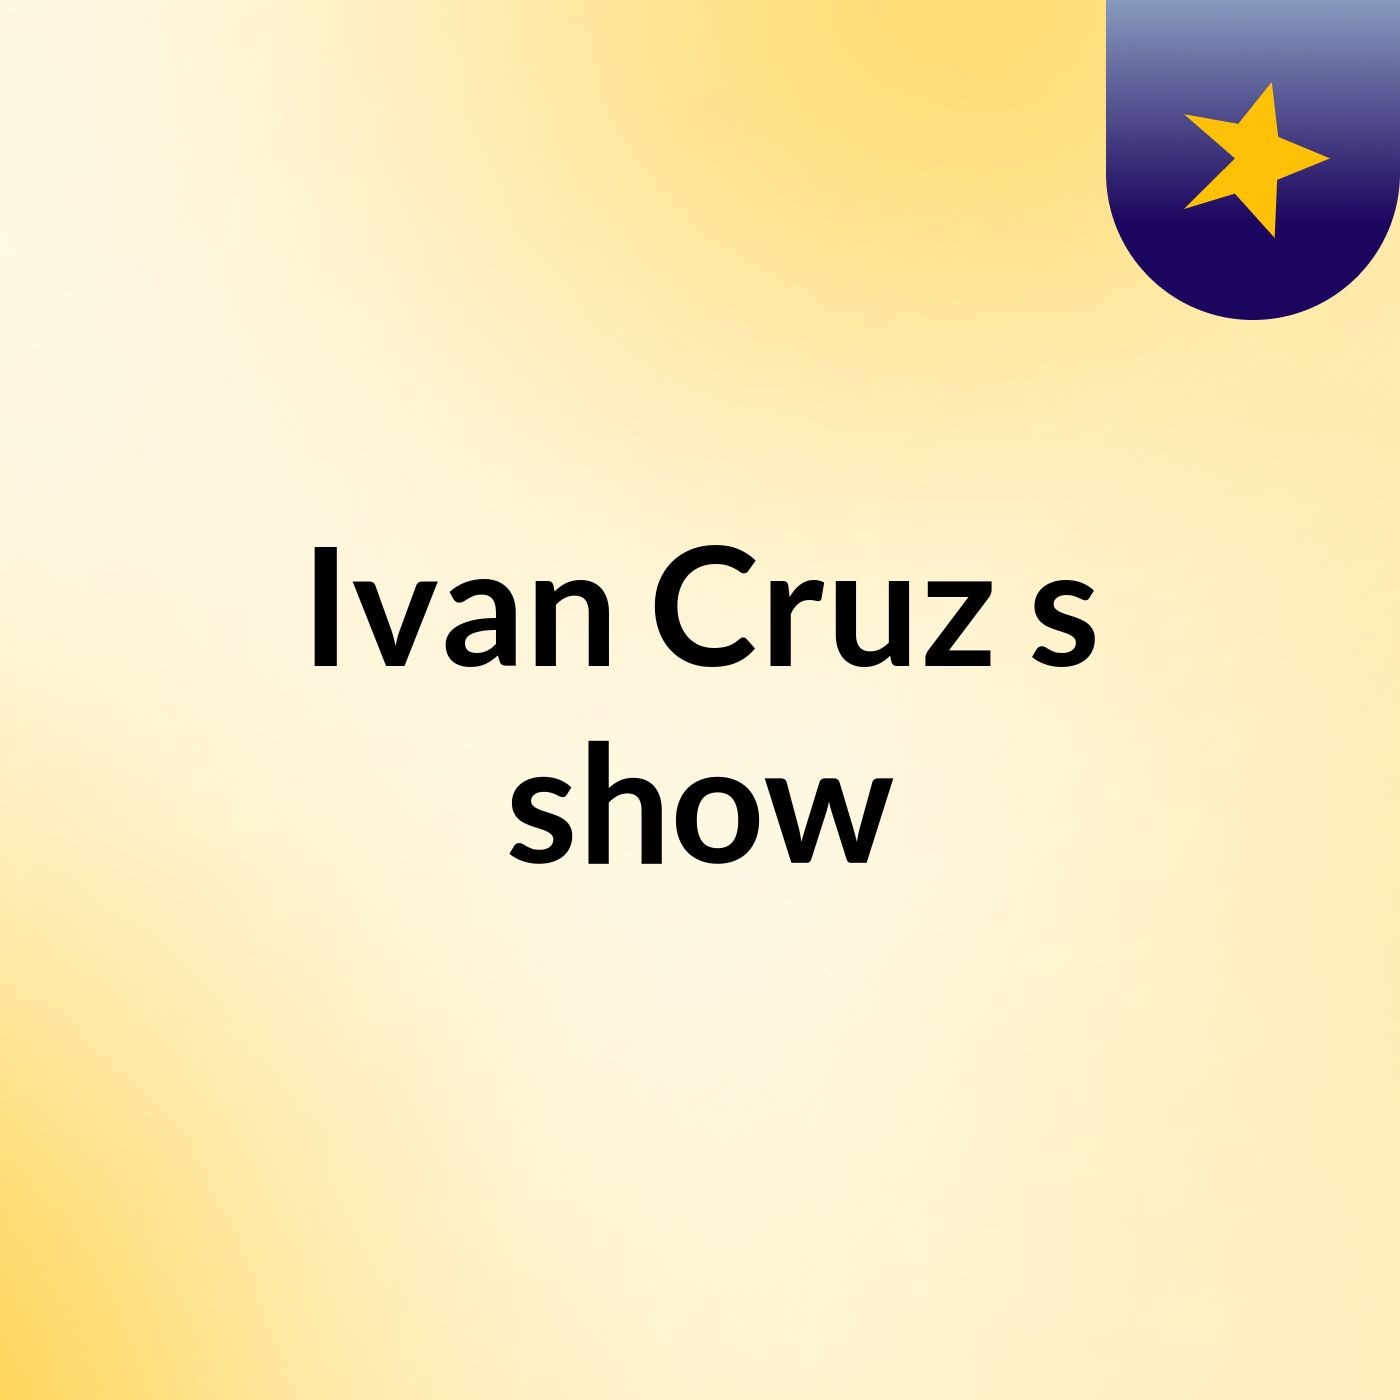 Ivan Cruz's show